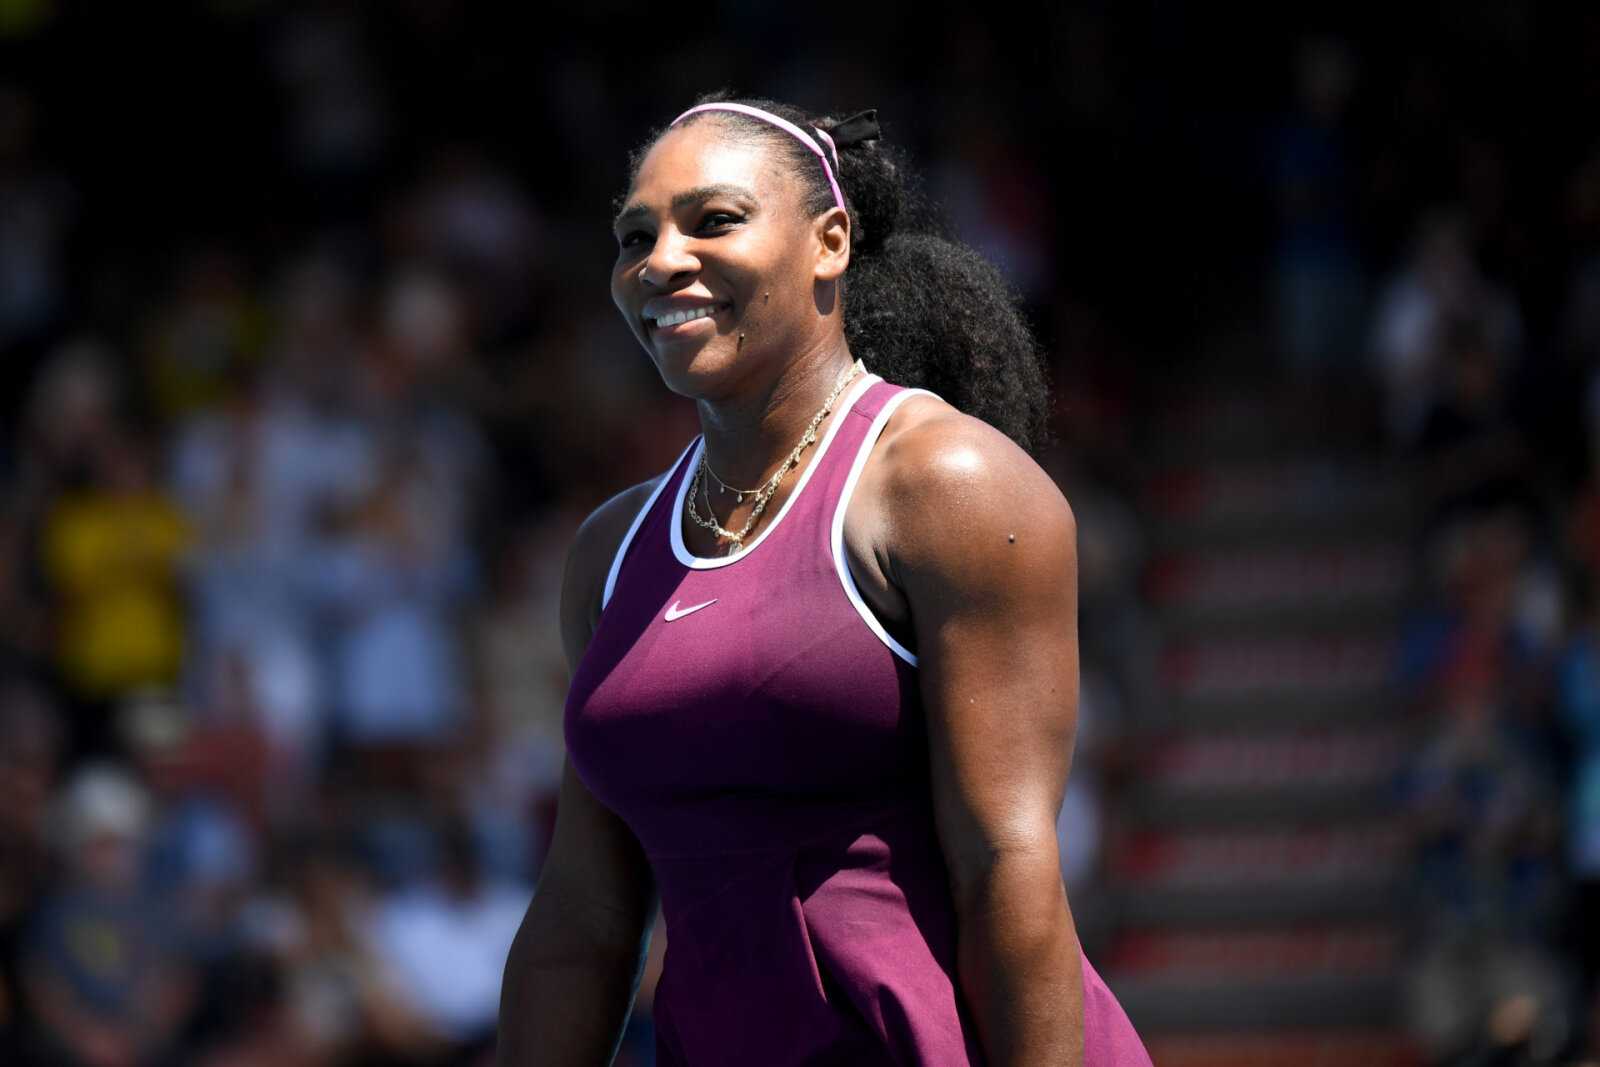 "Même si elle n'en gagne jamais une autre": l'ancienne joueuse du Top 10 salue les réalisations et l'influence de Serena Williams dans le tennis